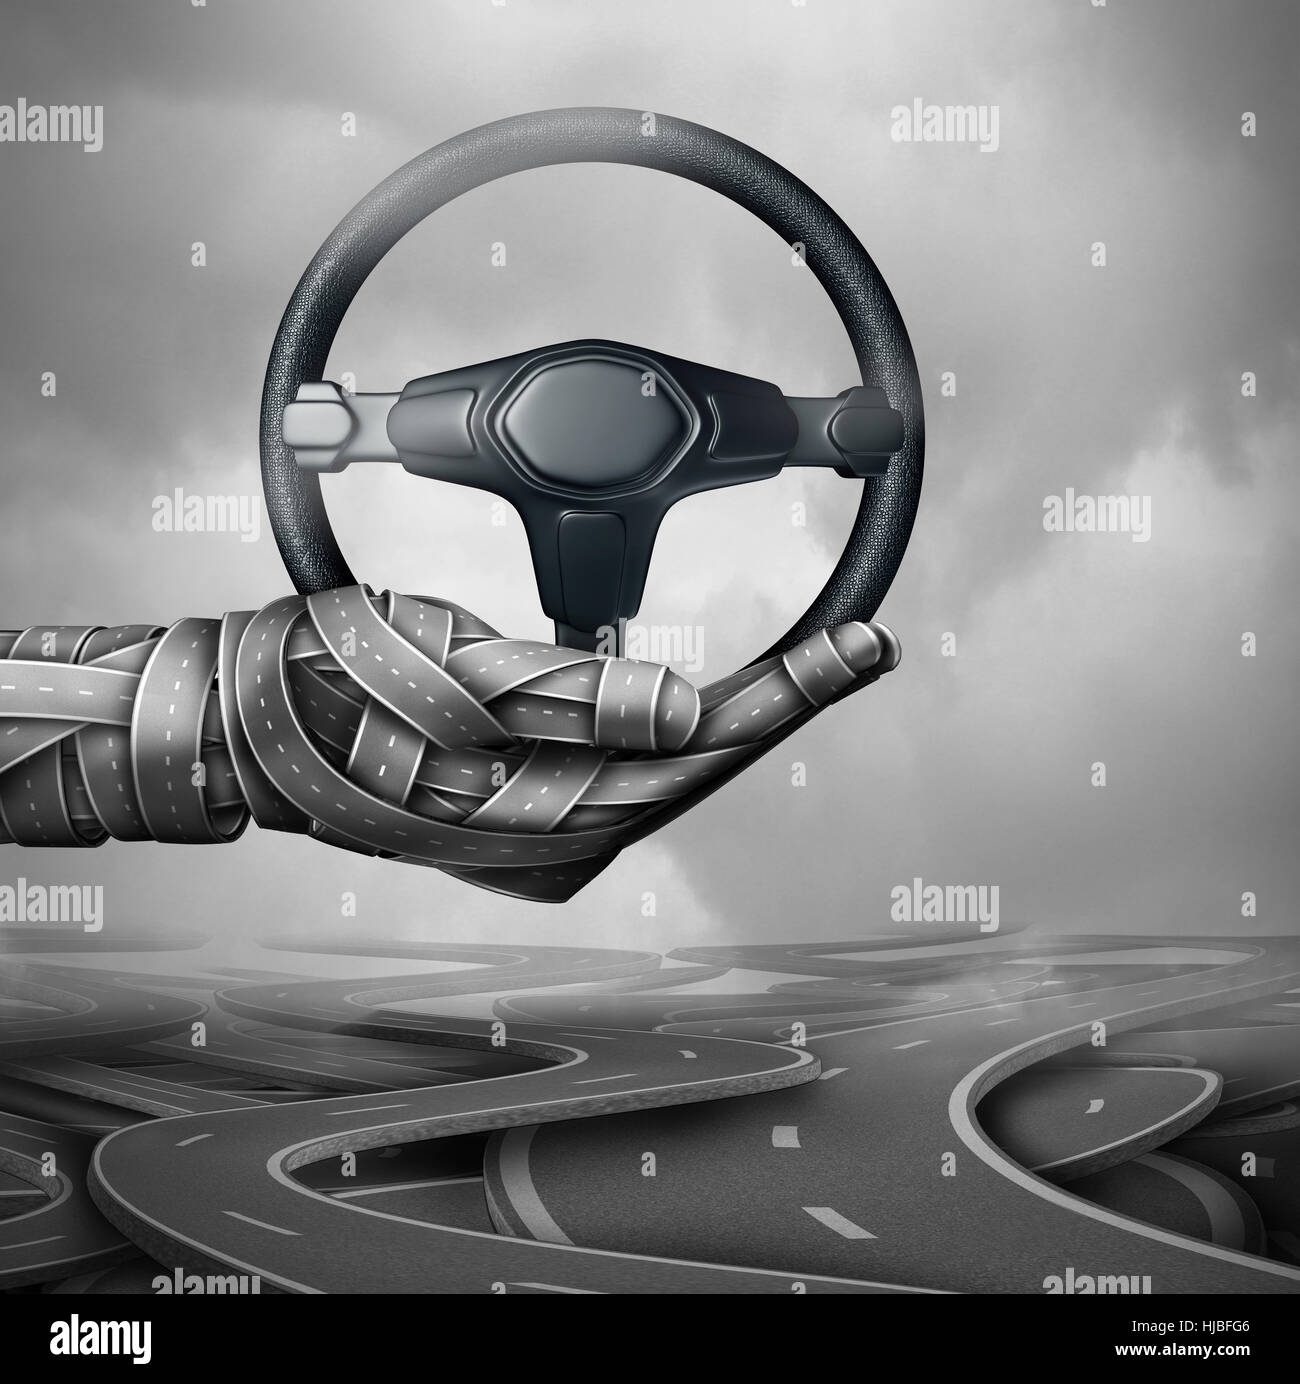 Concepto de asistencia en carretera y seguro de auto símbolo como un grupo de autopistas y calles con la forma de una mano sujetando un coche volante con ilustración 3D Foto de stock